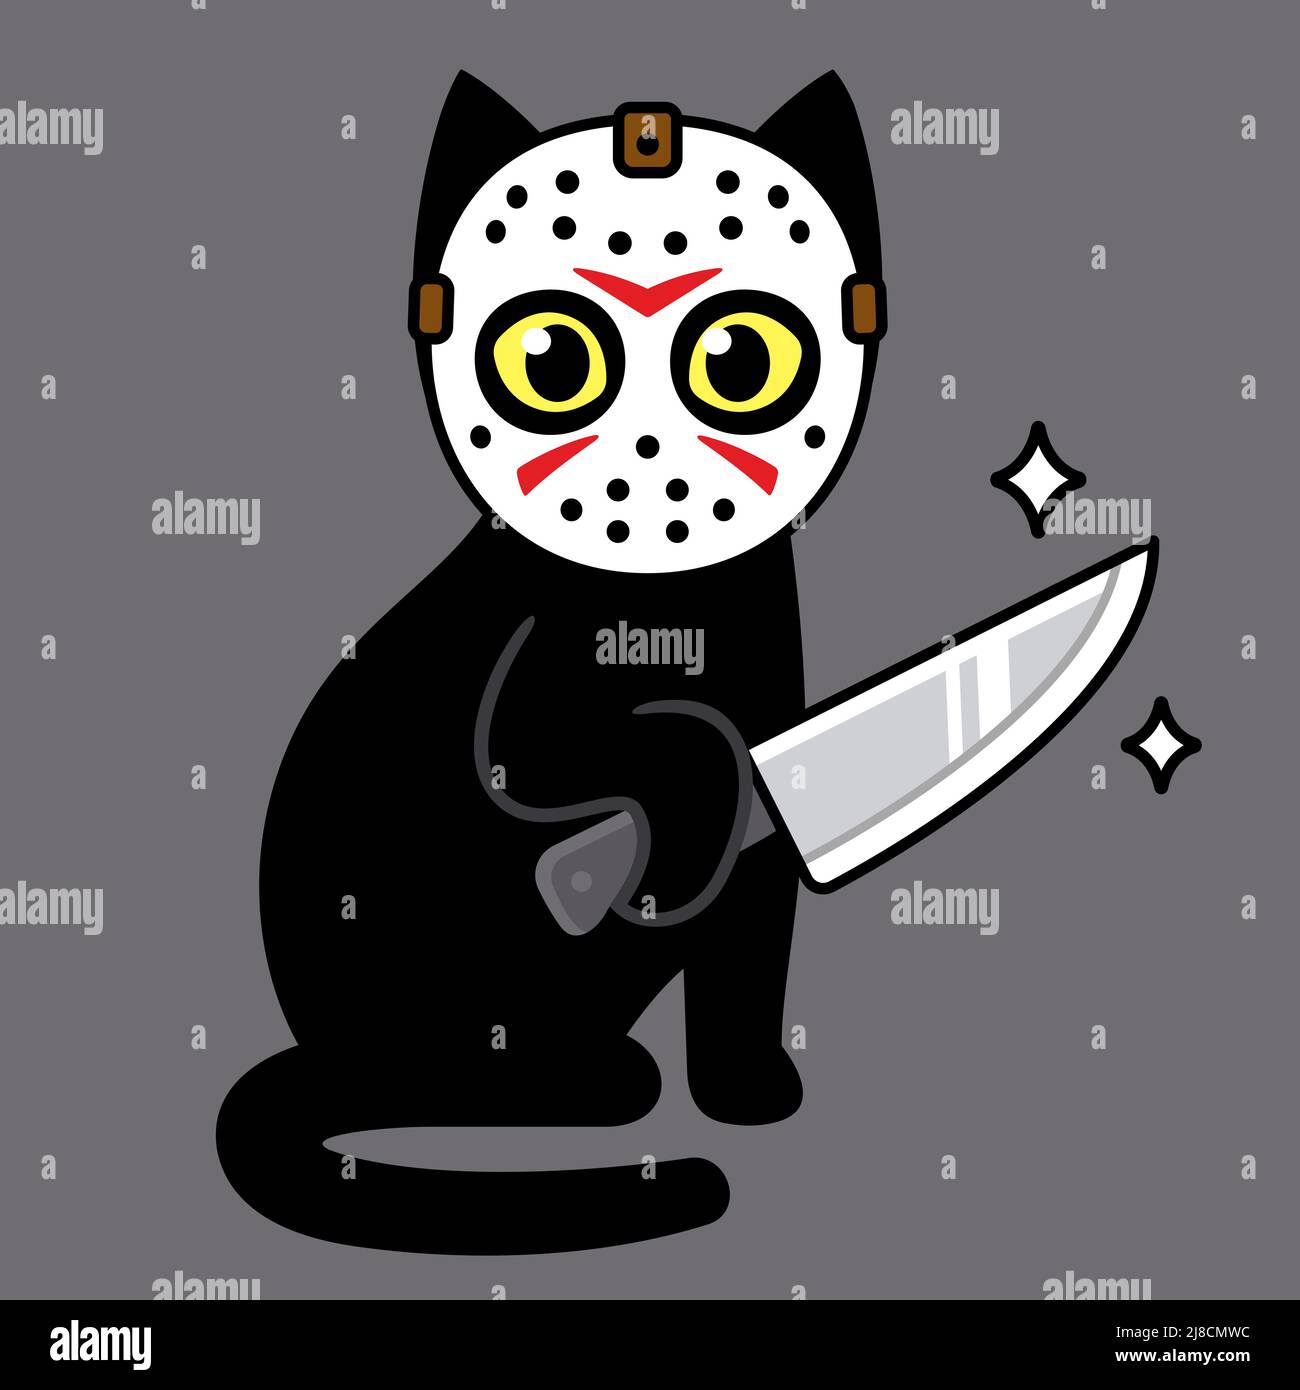 Drôle vendredi 13 dessin de dessin animé, mignon chat noir en série tueur masque tenant un couteau. Illustration de vecteur d'humour d'horreur. Illustration de Vecteur